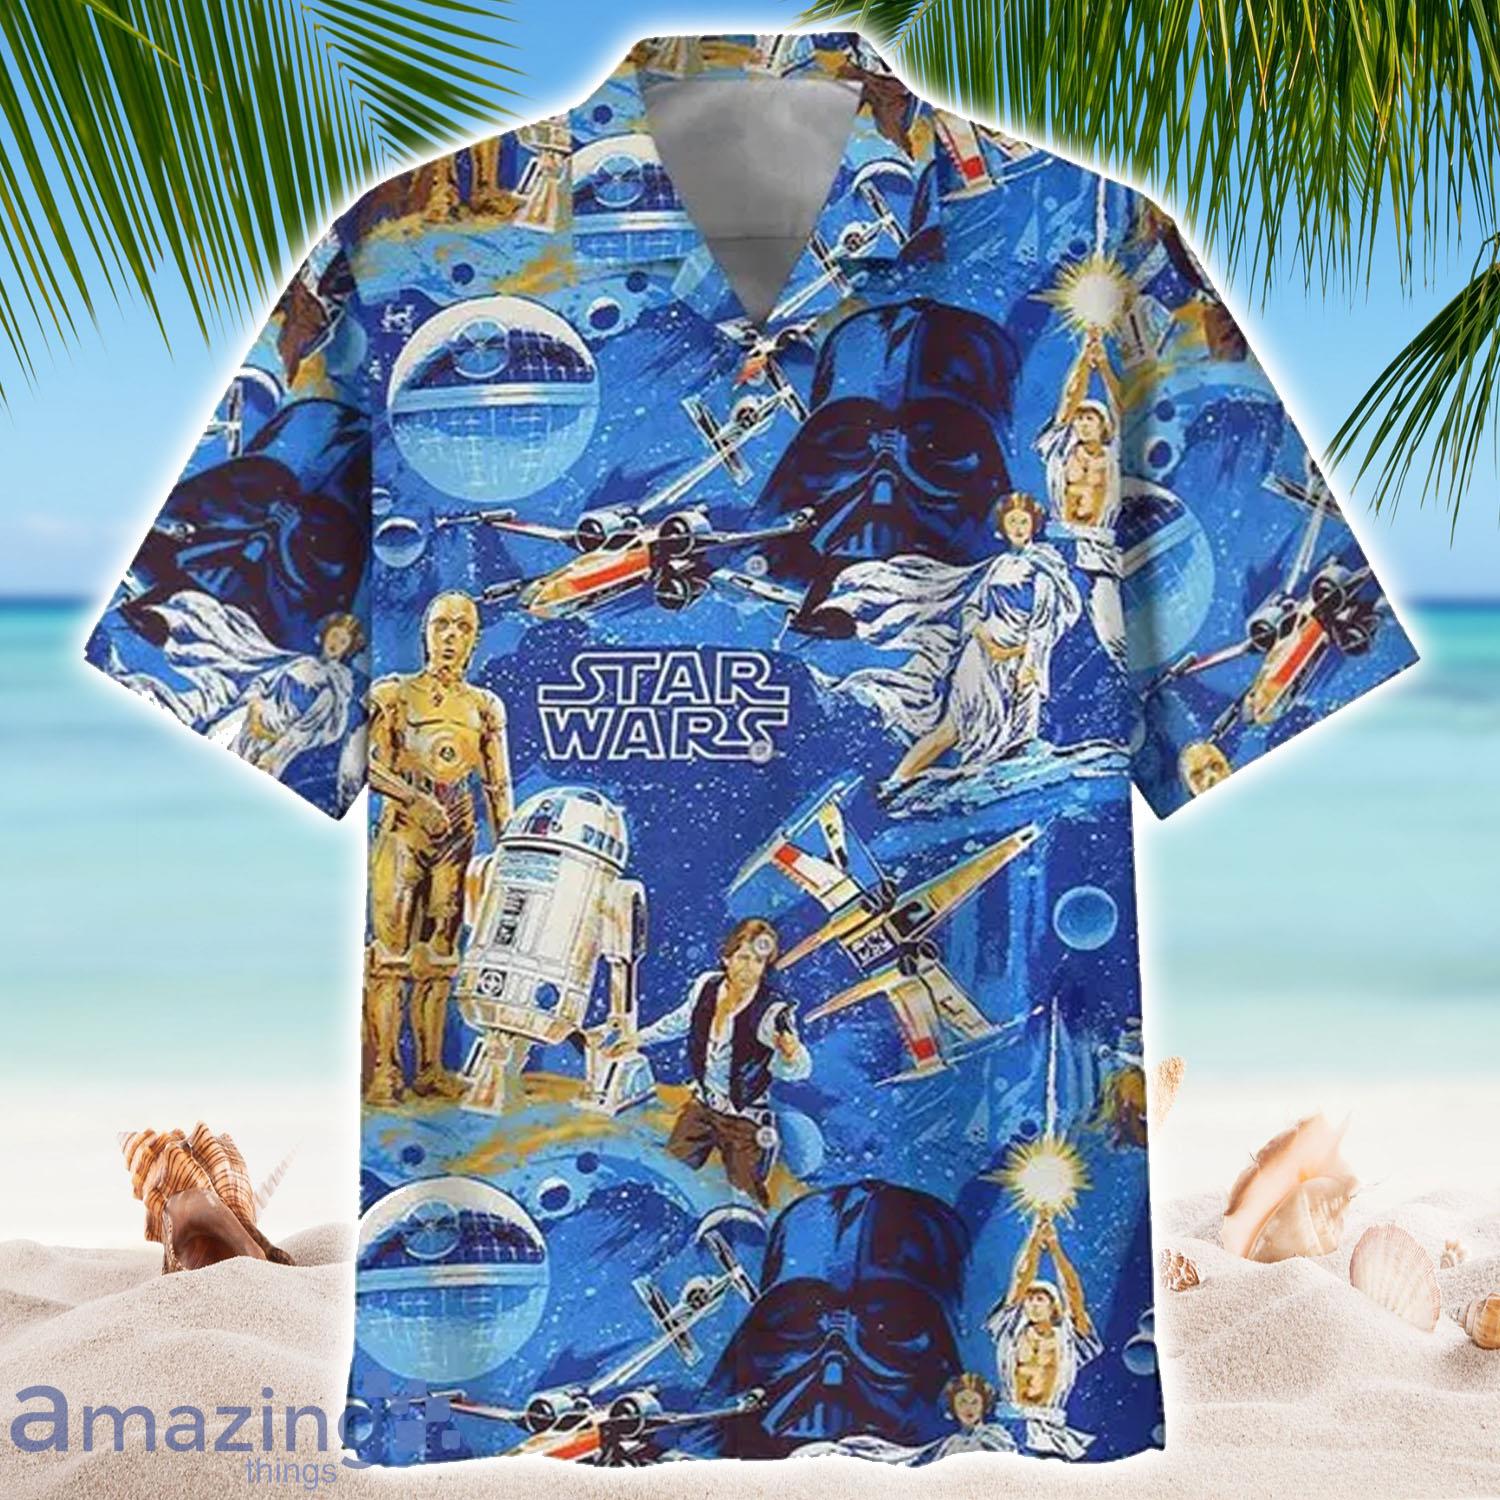 Amazing Star Wars In Universe Hawaiian Shirt - Amazing Star Wars In Universe Hawaiian Shirt